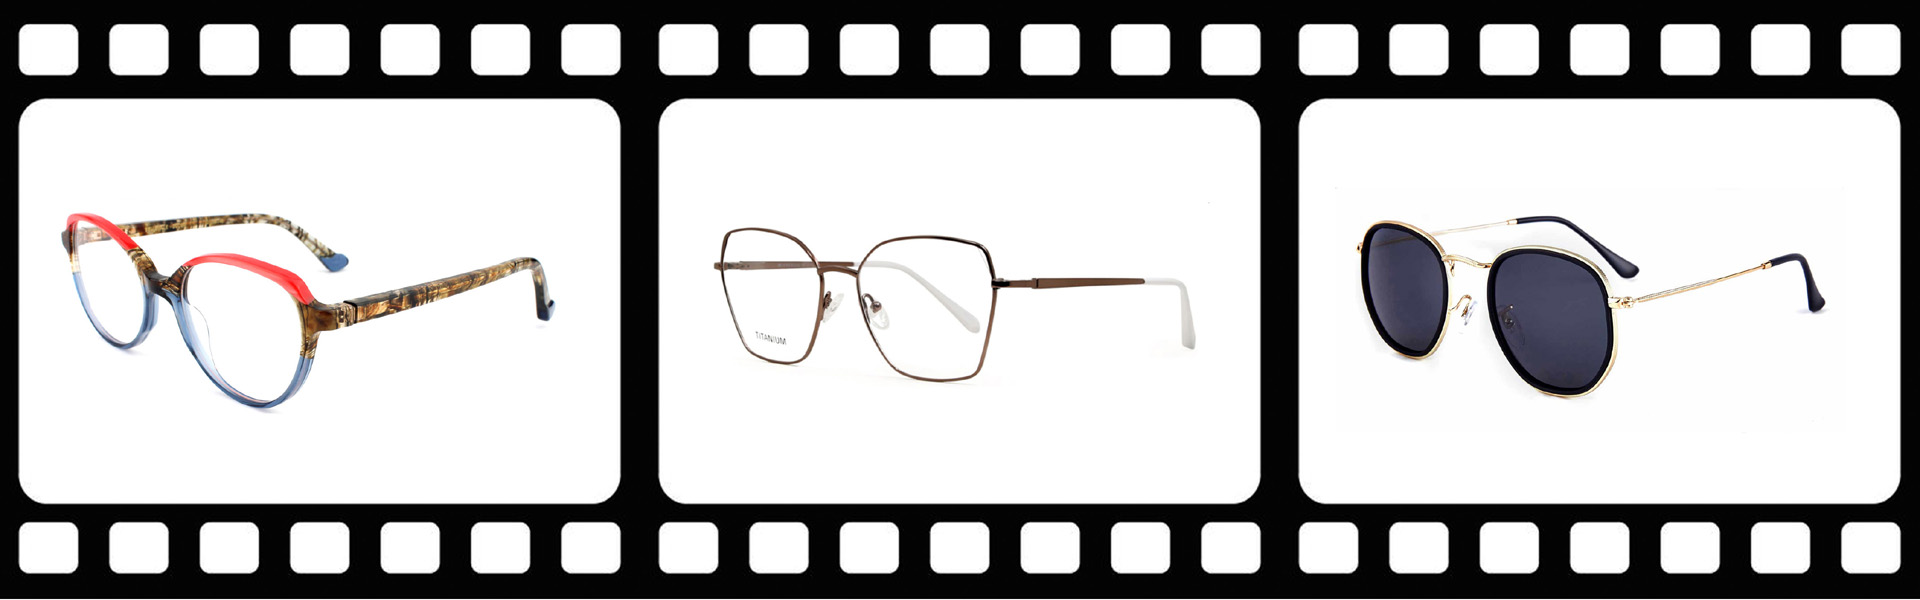 valmiit varastosilmälasit, silmälasit, valmiit varastosilmälasit,Wenzhou Ruite Optics Co.,Ltd